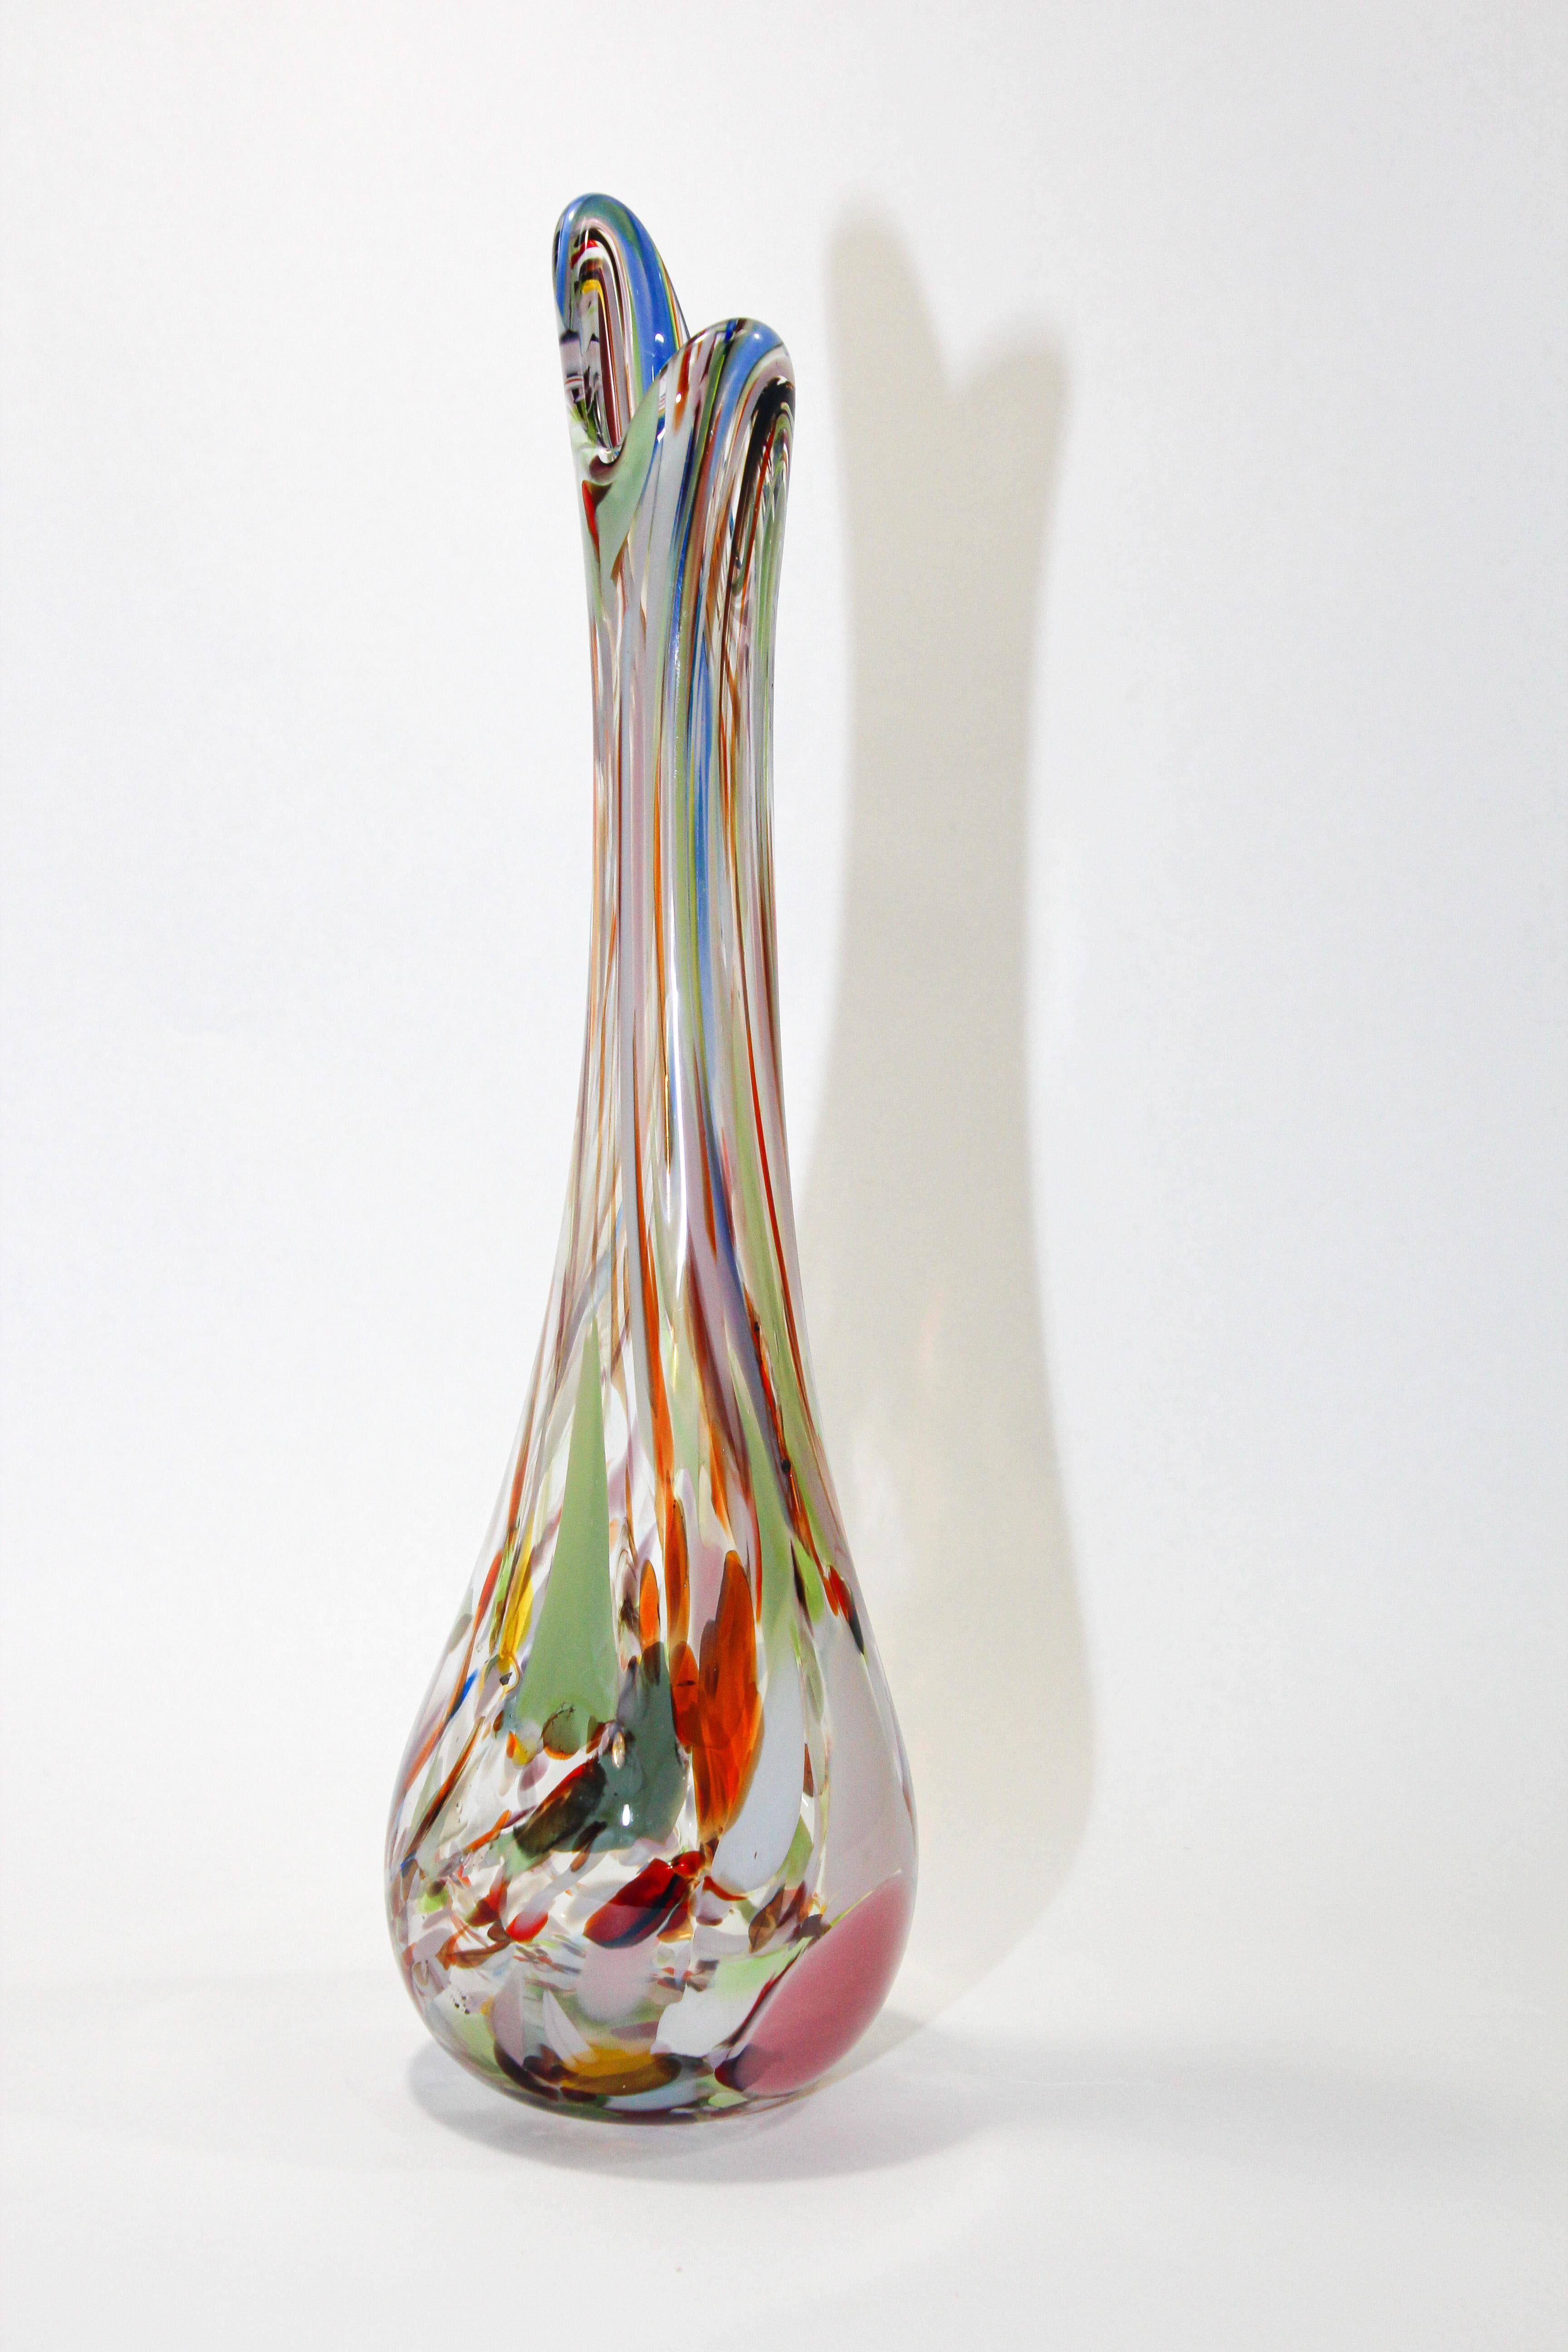 Vase aus mundgeblasenem venezianischem Murano-Kunstglas im Vintage-Stil in mehrfarbigen Tönen.
Handgefertigt mit der Technik des Glasblasens und der Murrina-Dekoration. 
Eine schöne, organische, elegante Vase mit einer interessanten, originellen